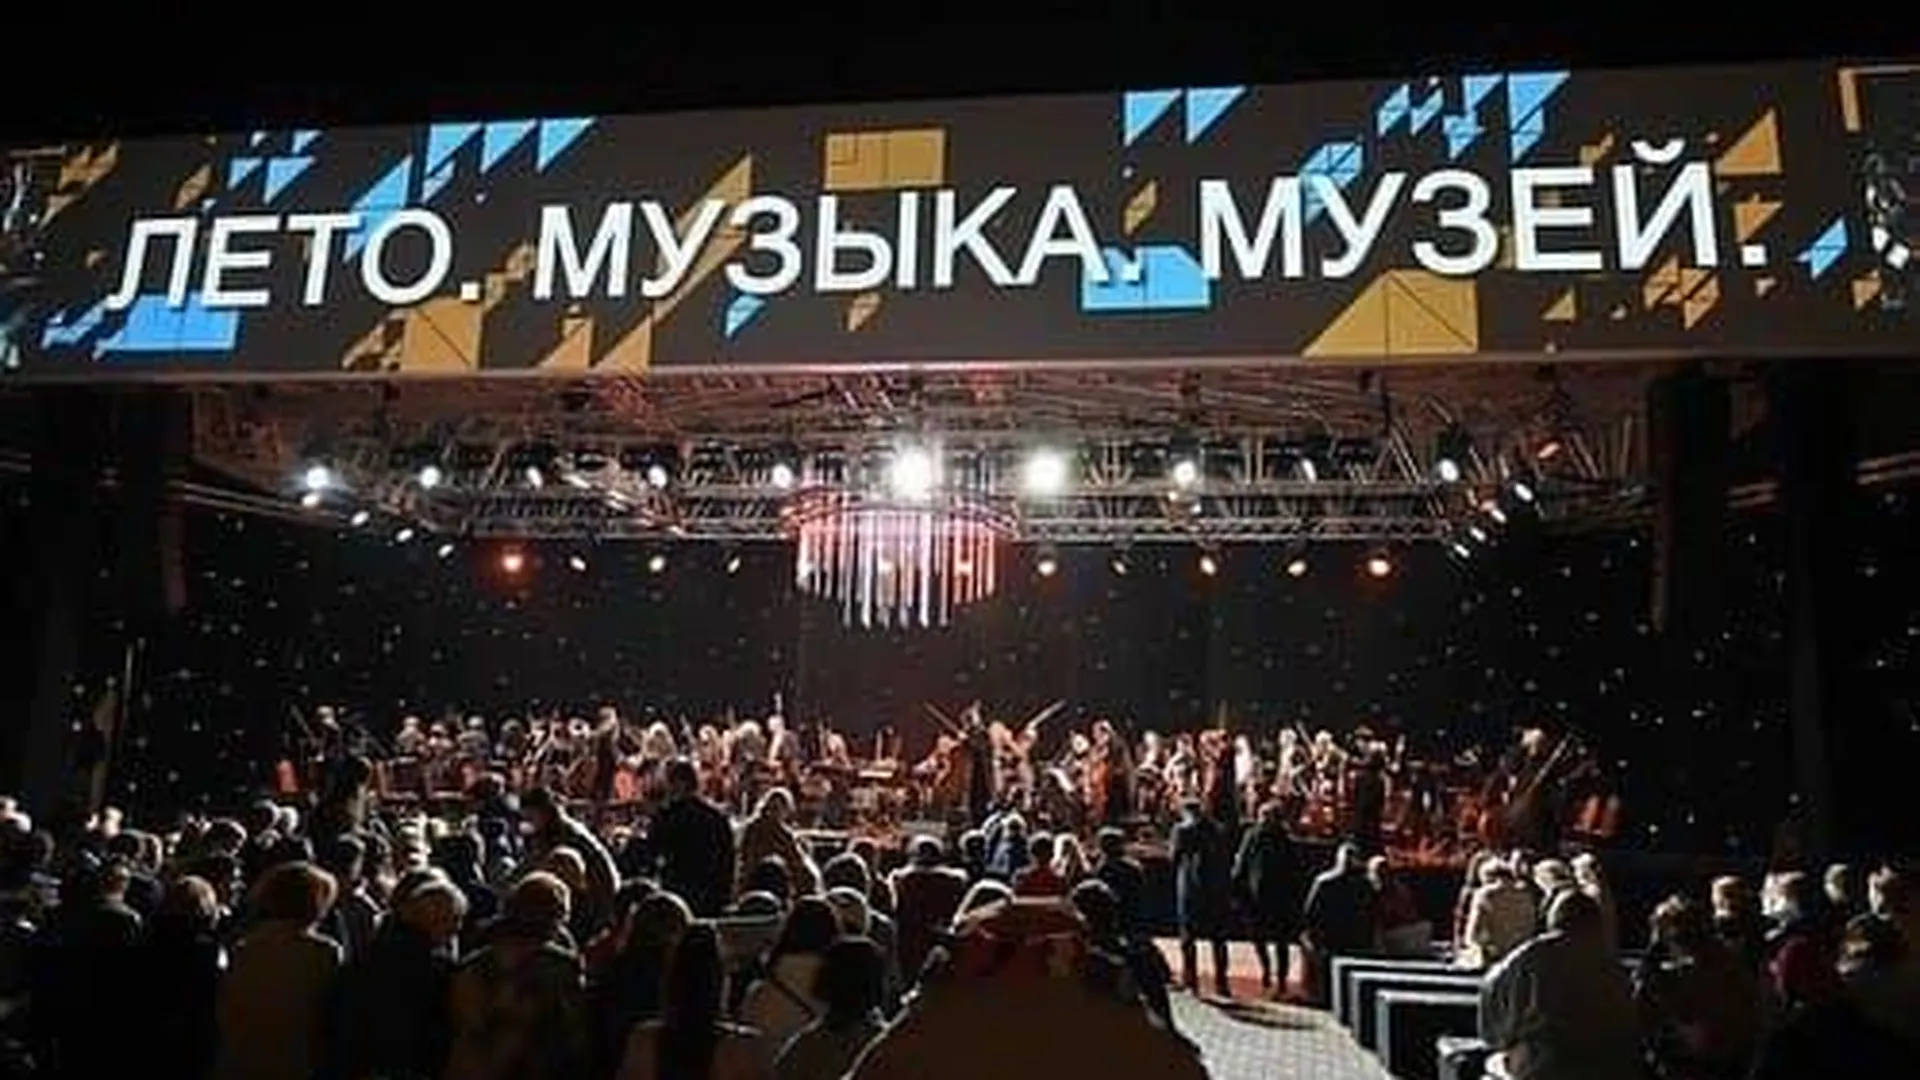 Большой театр России впервые выступит в Подмосковье на фестивале «Лето. Музыка. Музей»